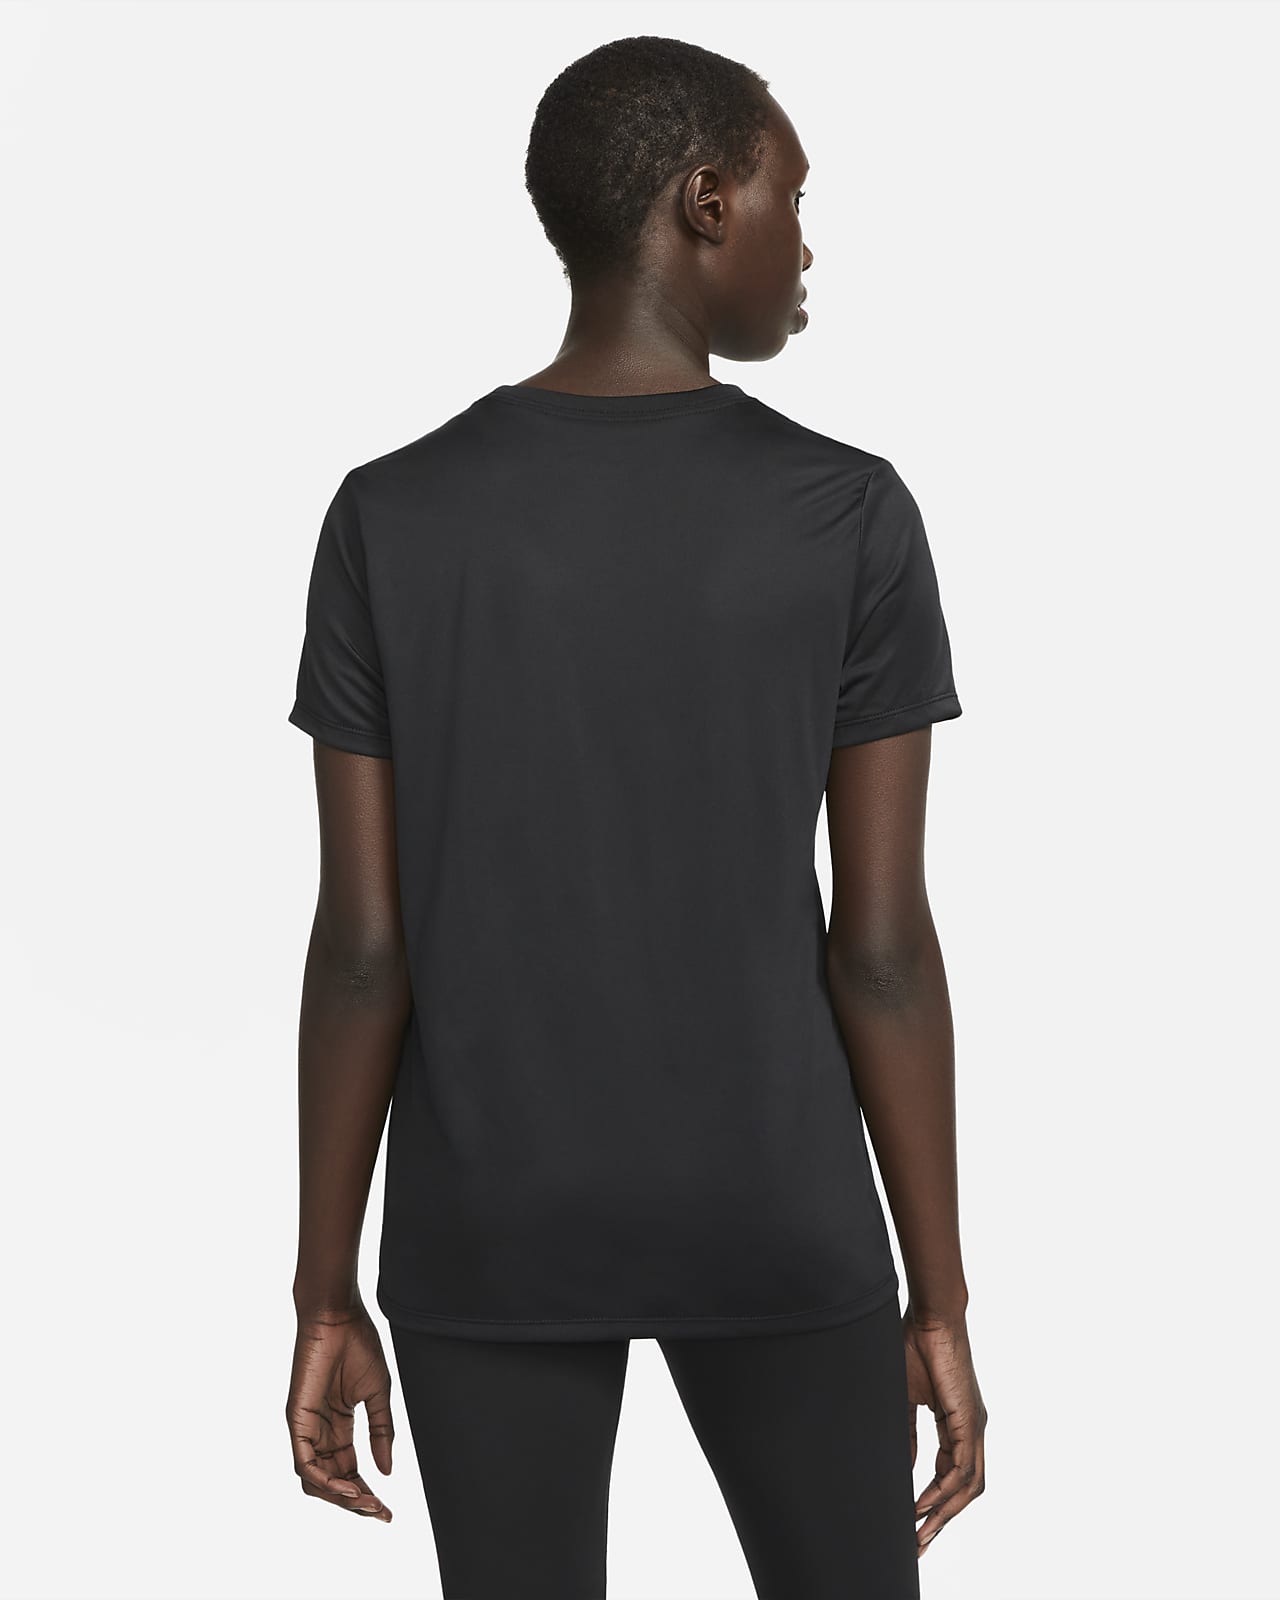 Nike Dri-Fit One Standard-Fit T-Shirt Women - Colgan Sports